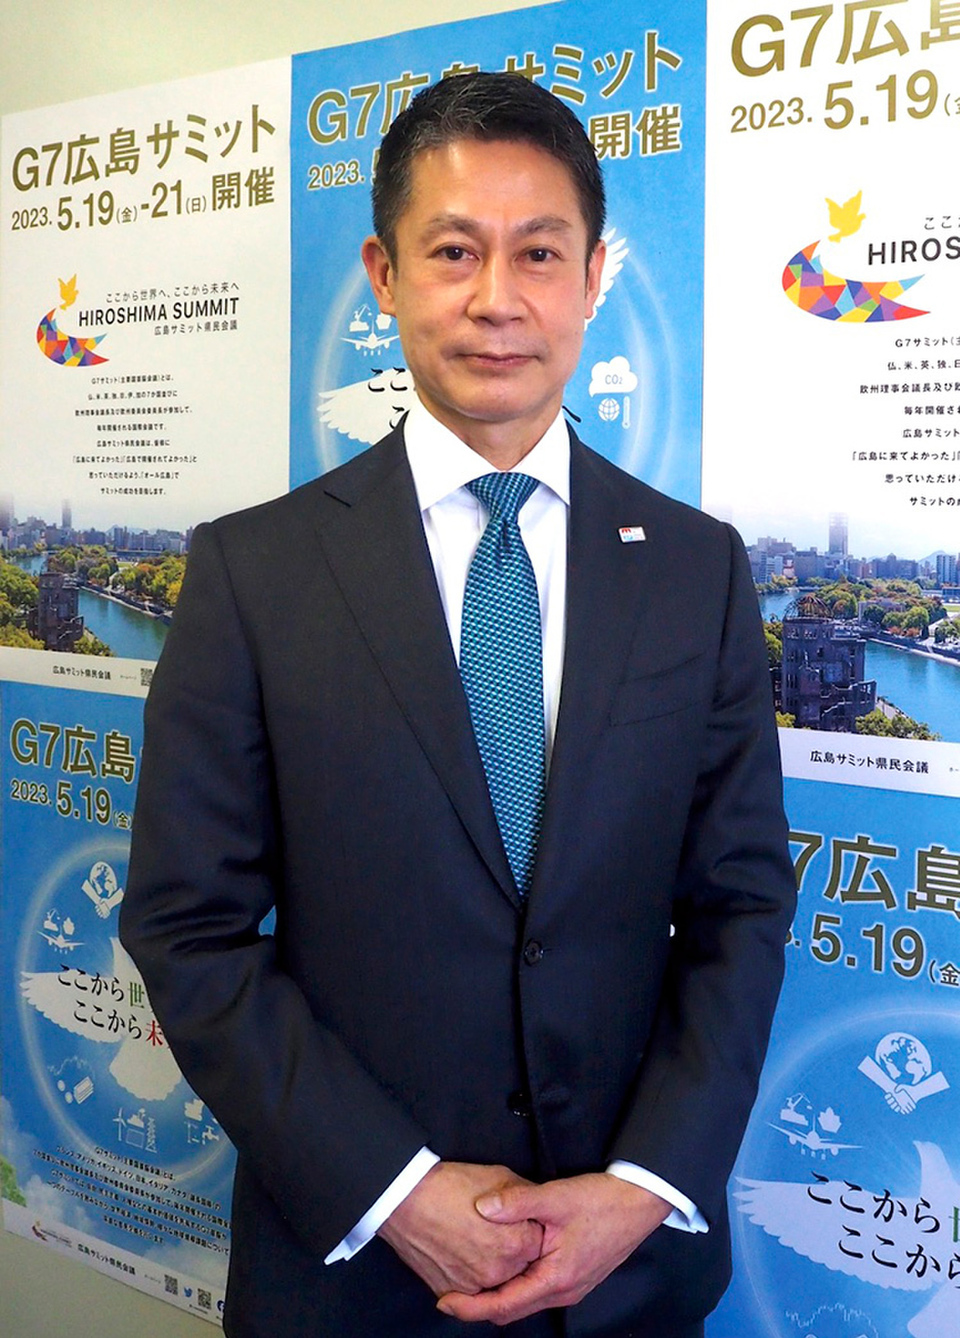 Governor of Hiroshima Prefecture Yuzuki Hidehiko